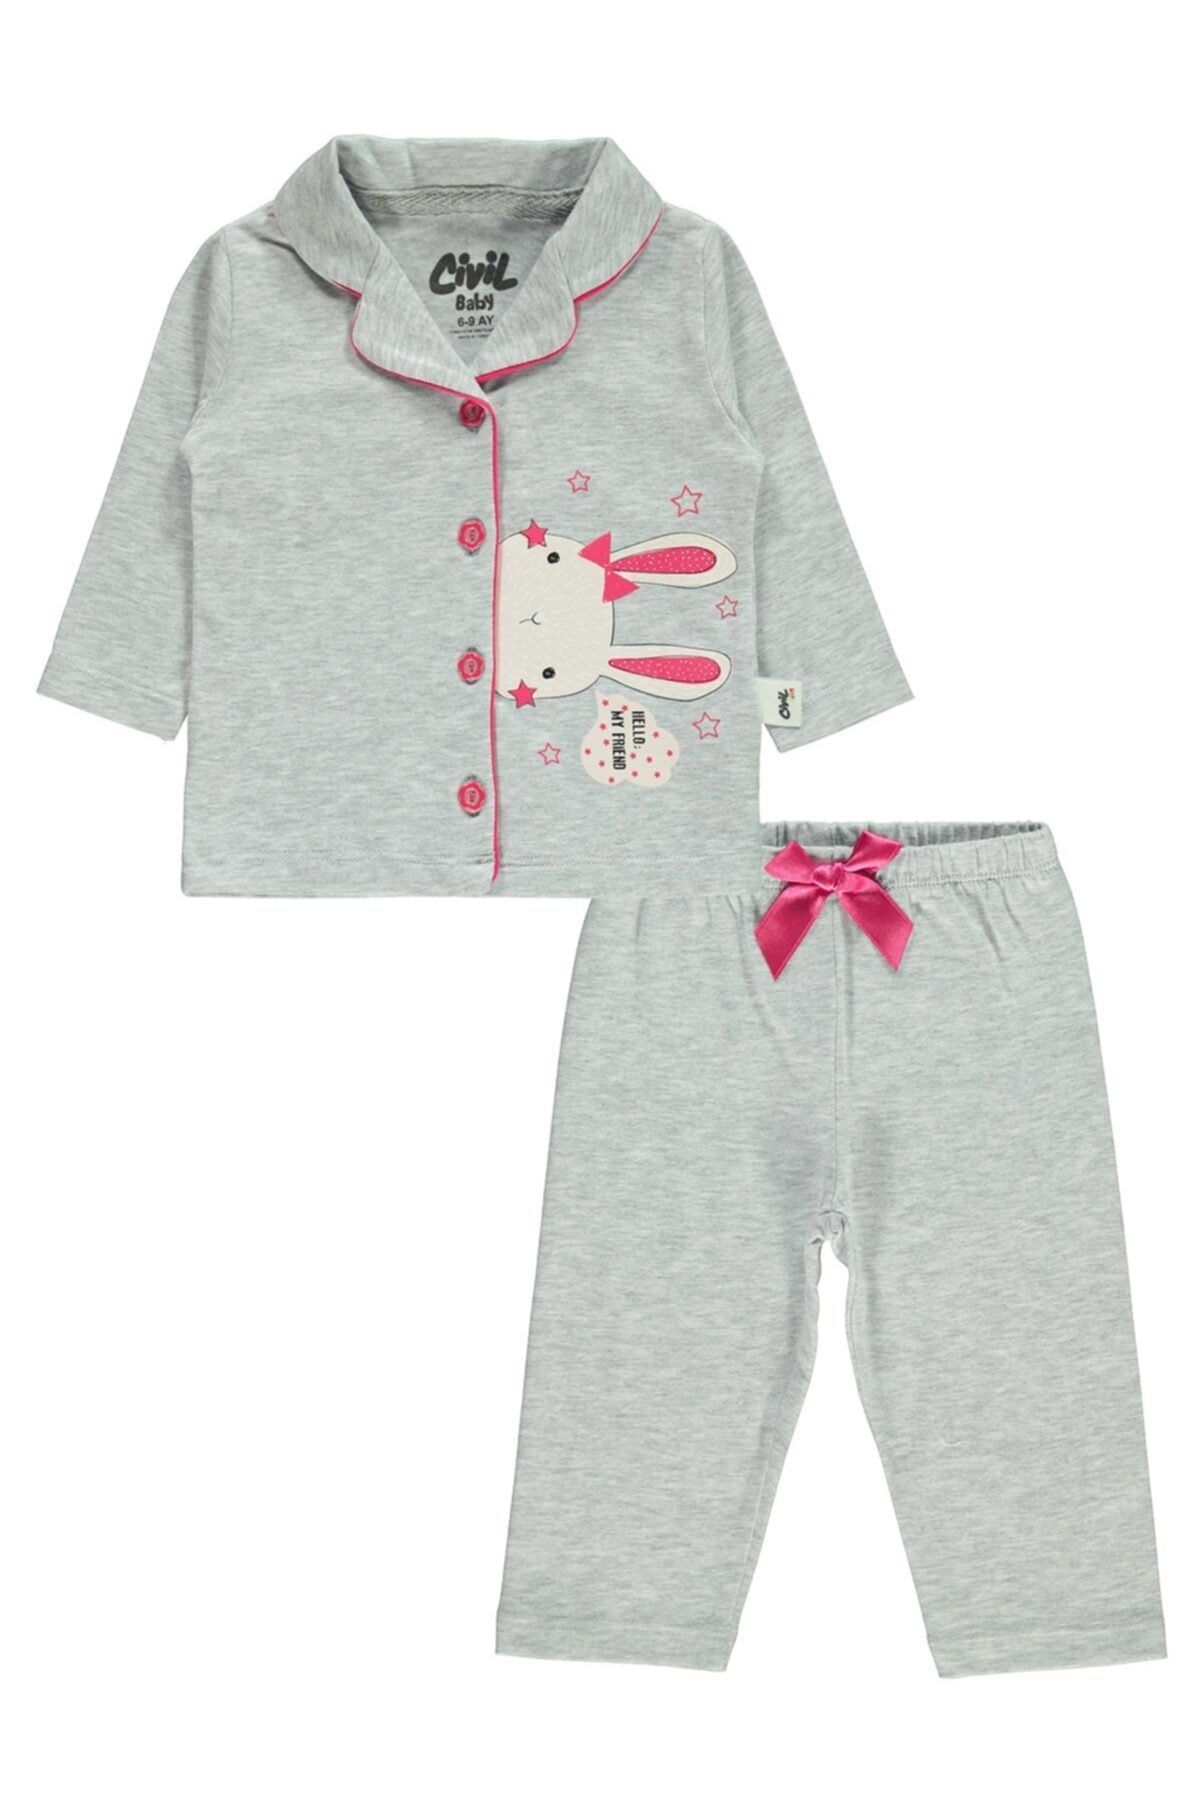 Civil Baby Kız Bebek  Karmelanj Pijama Takımı 6-18 Ay